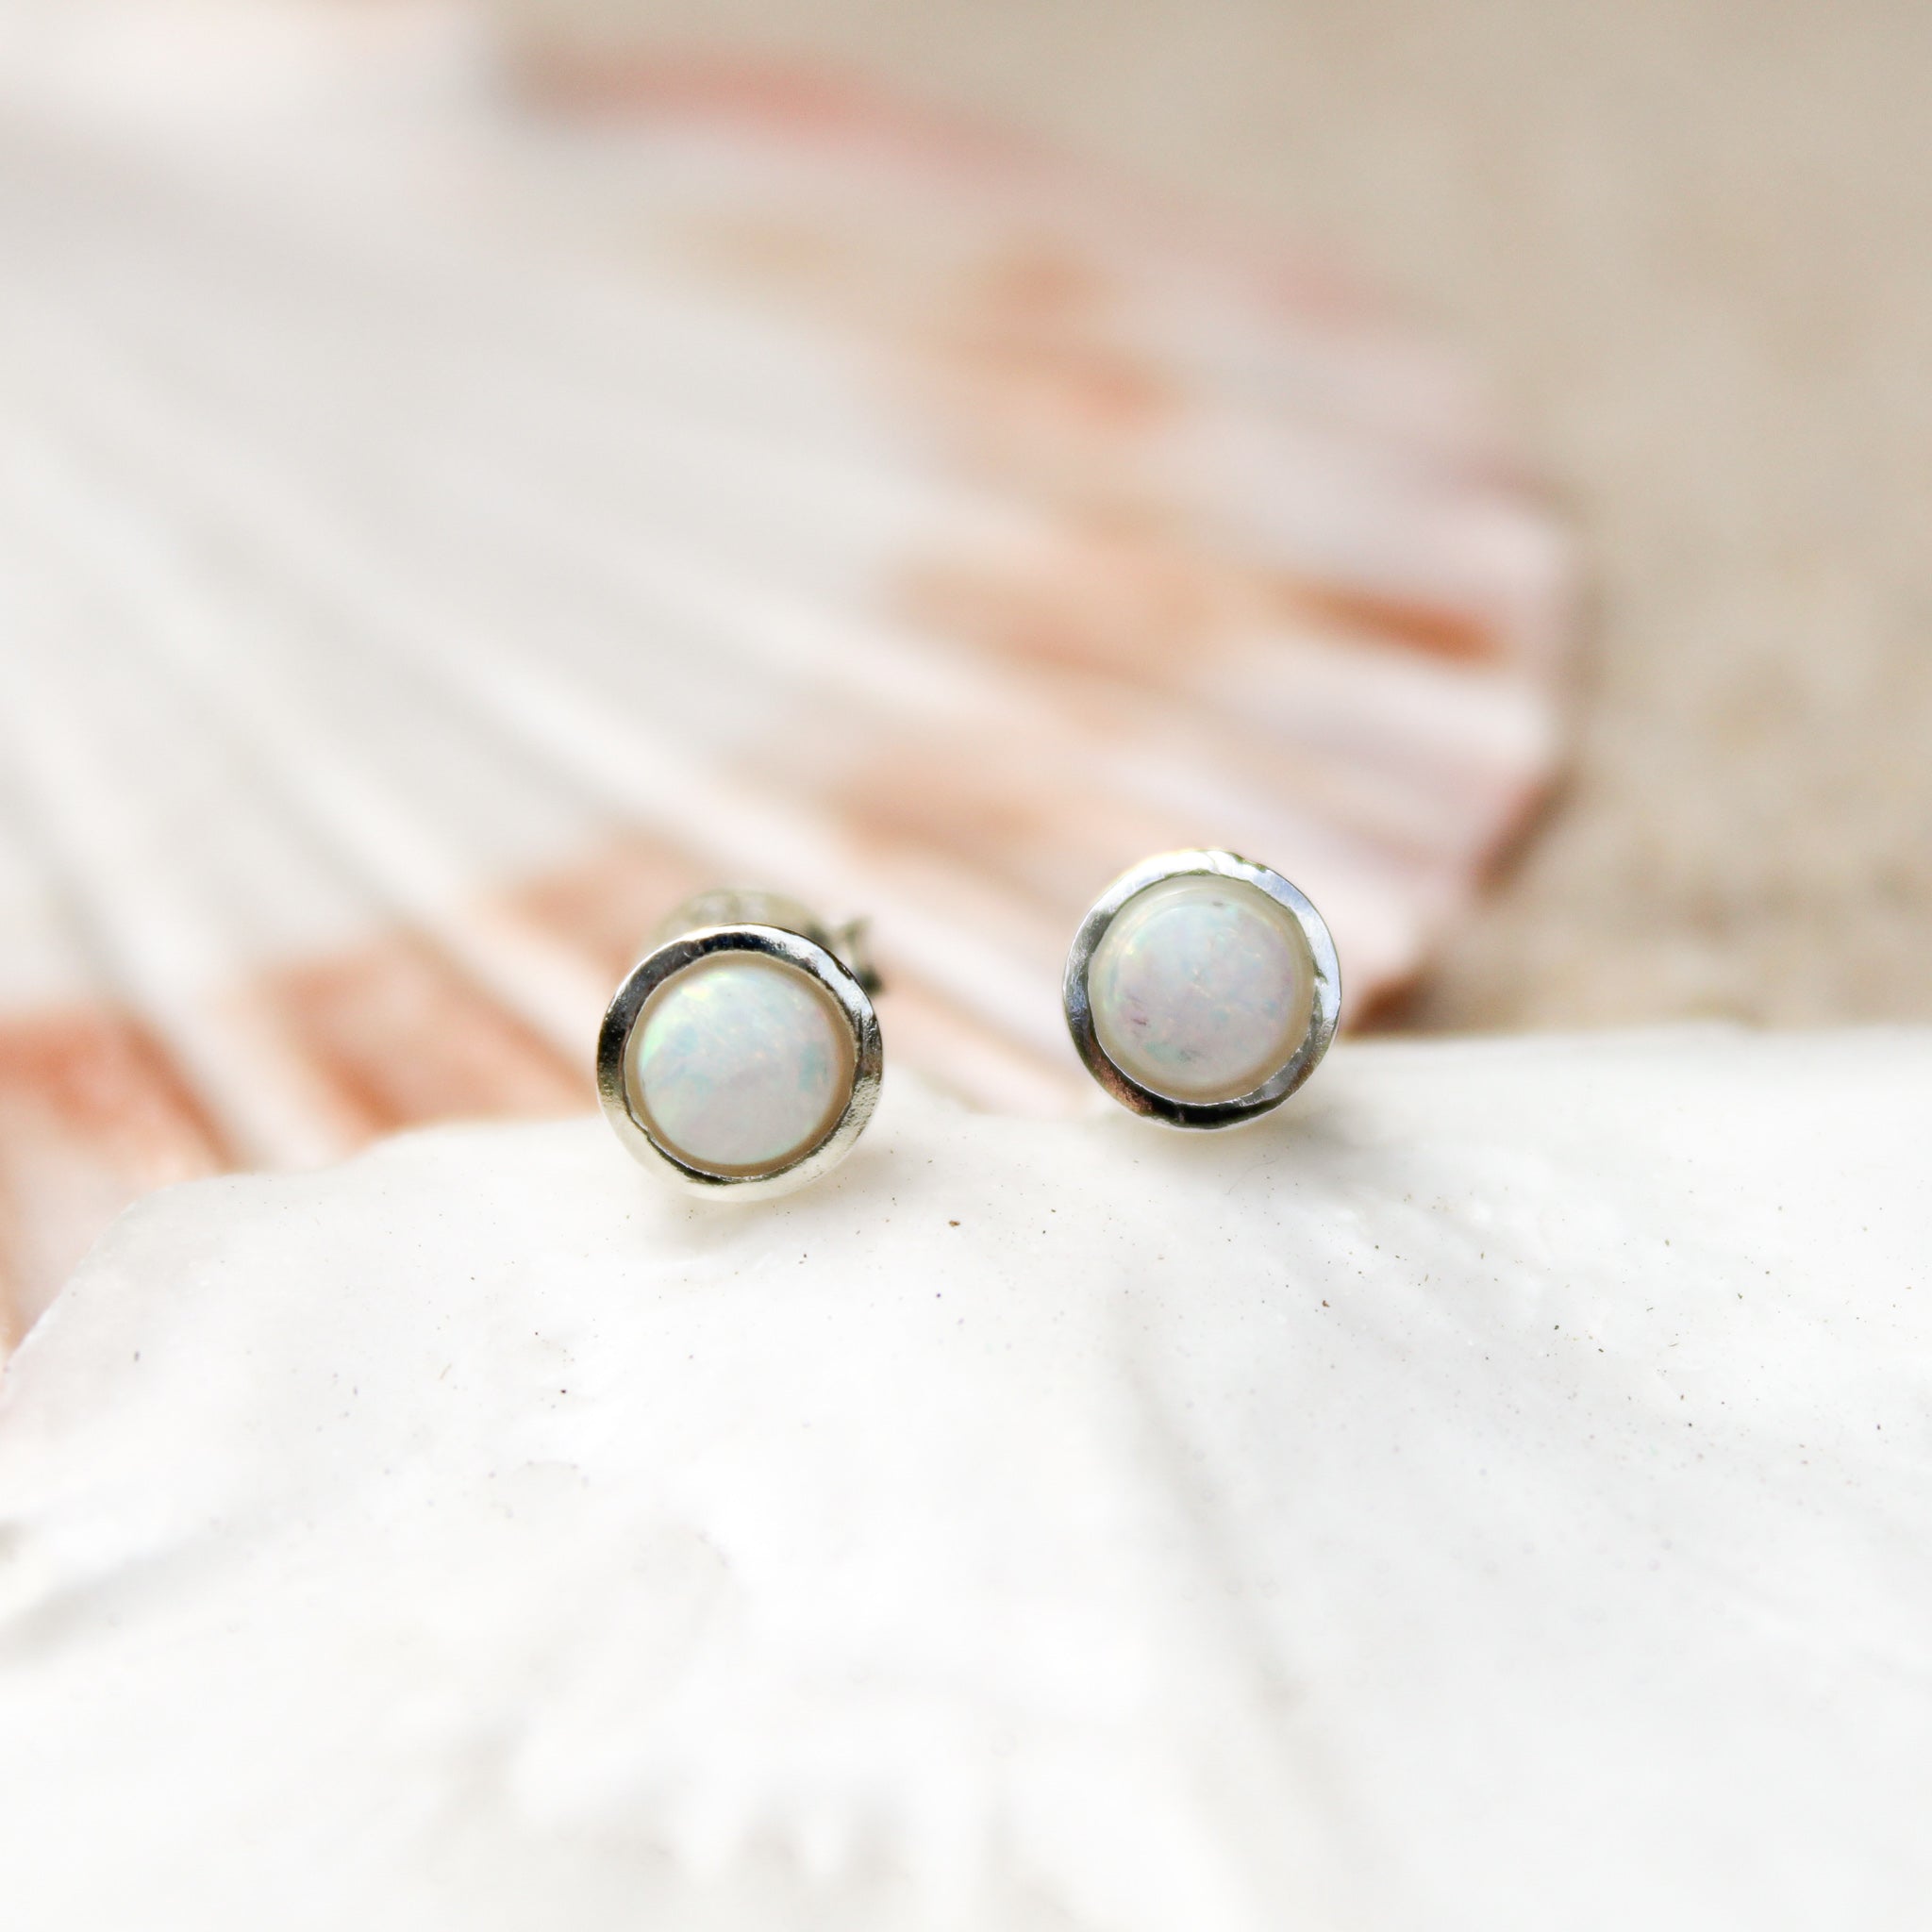 White opal earrings